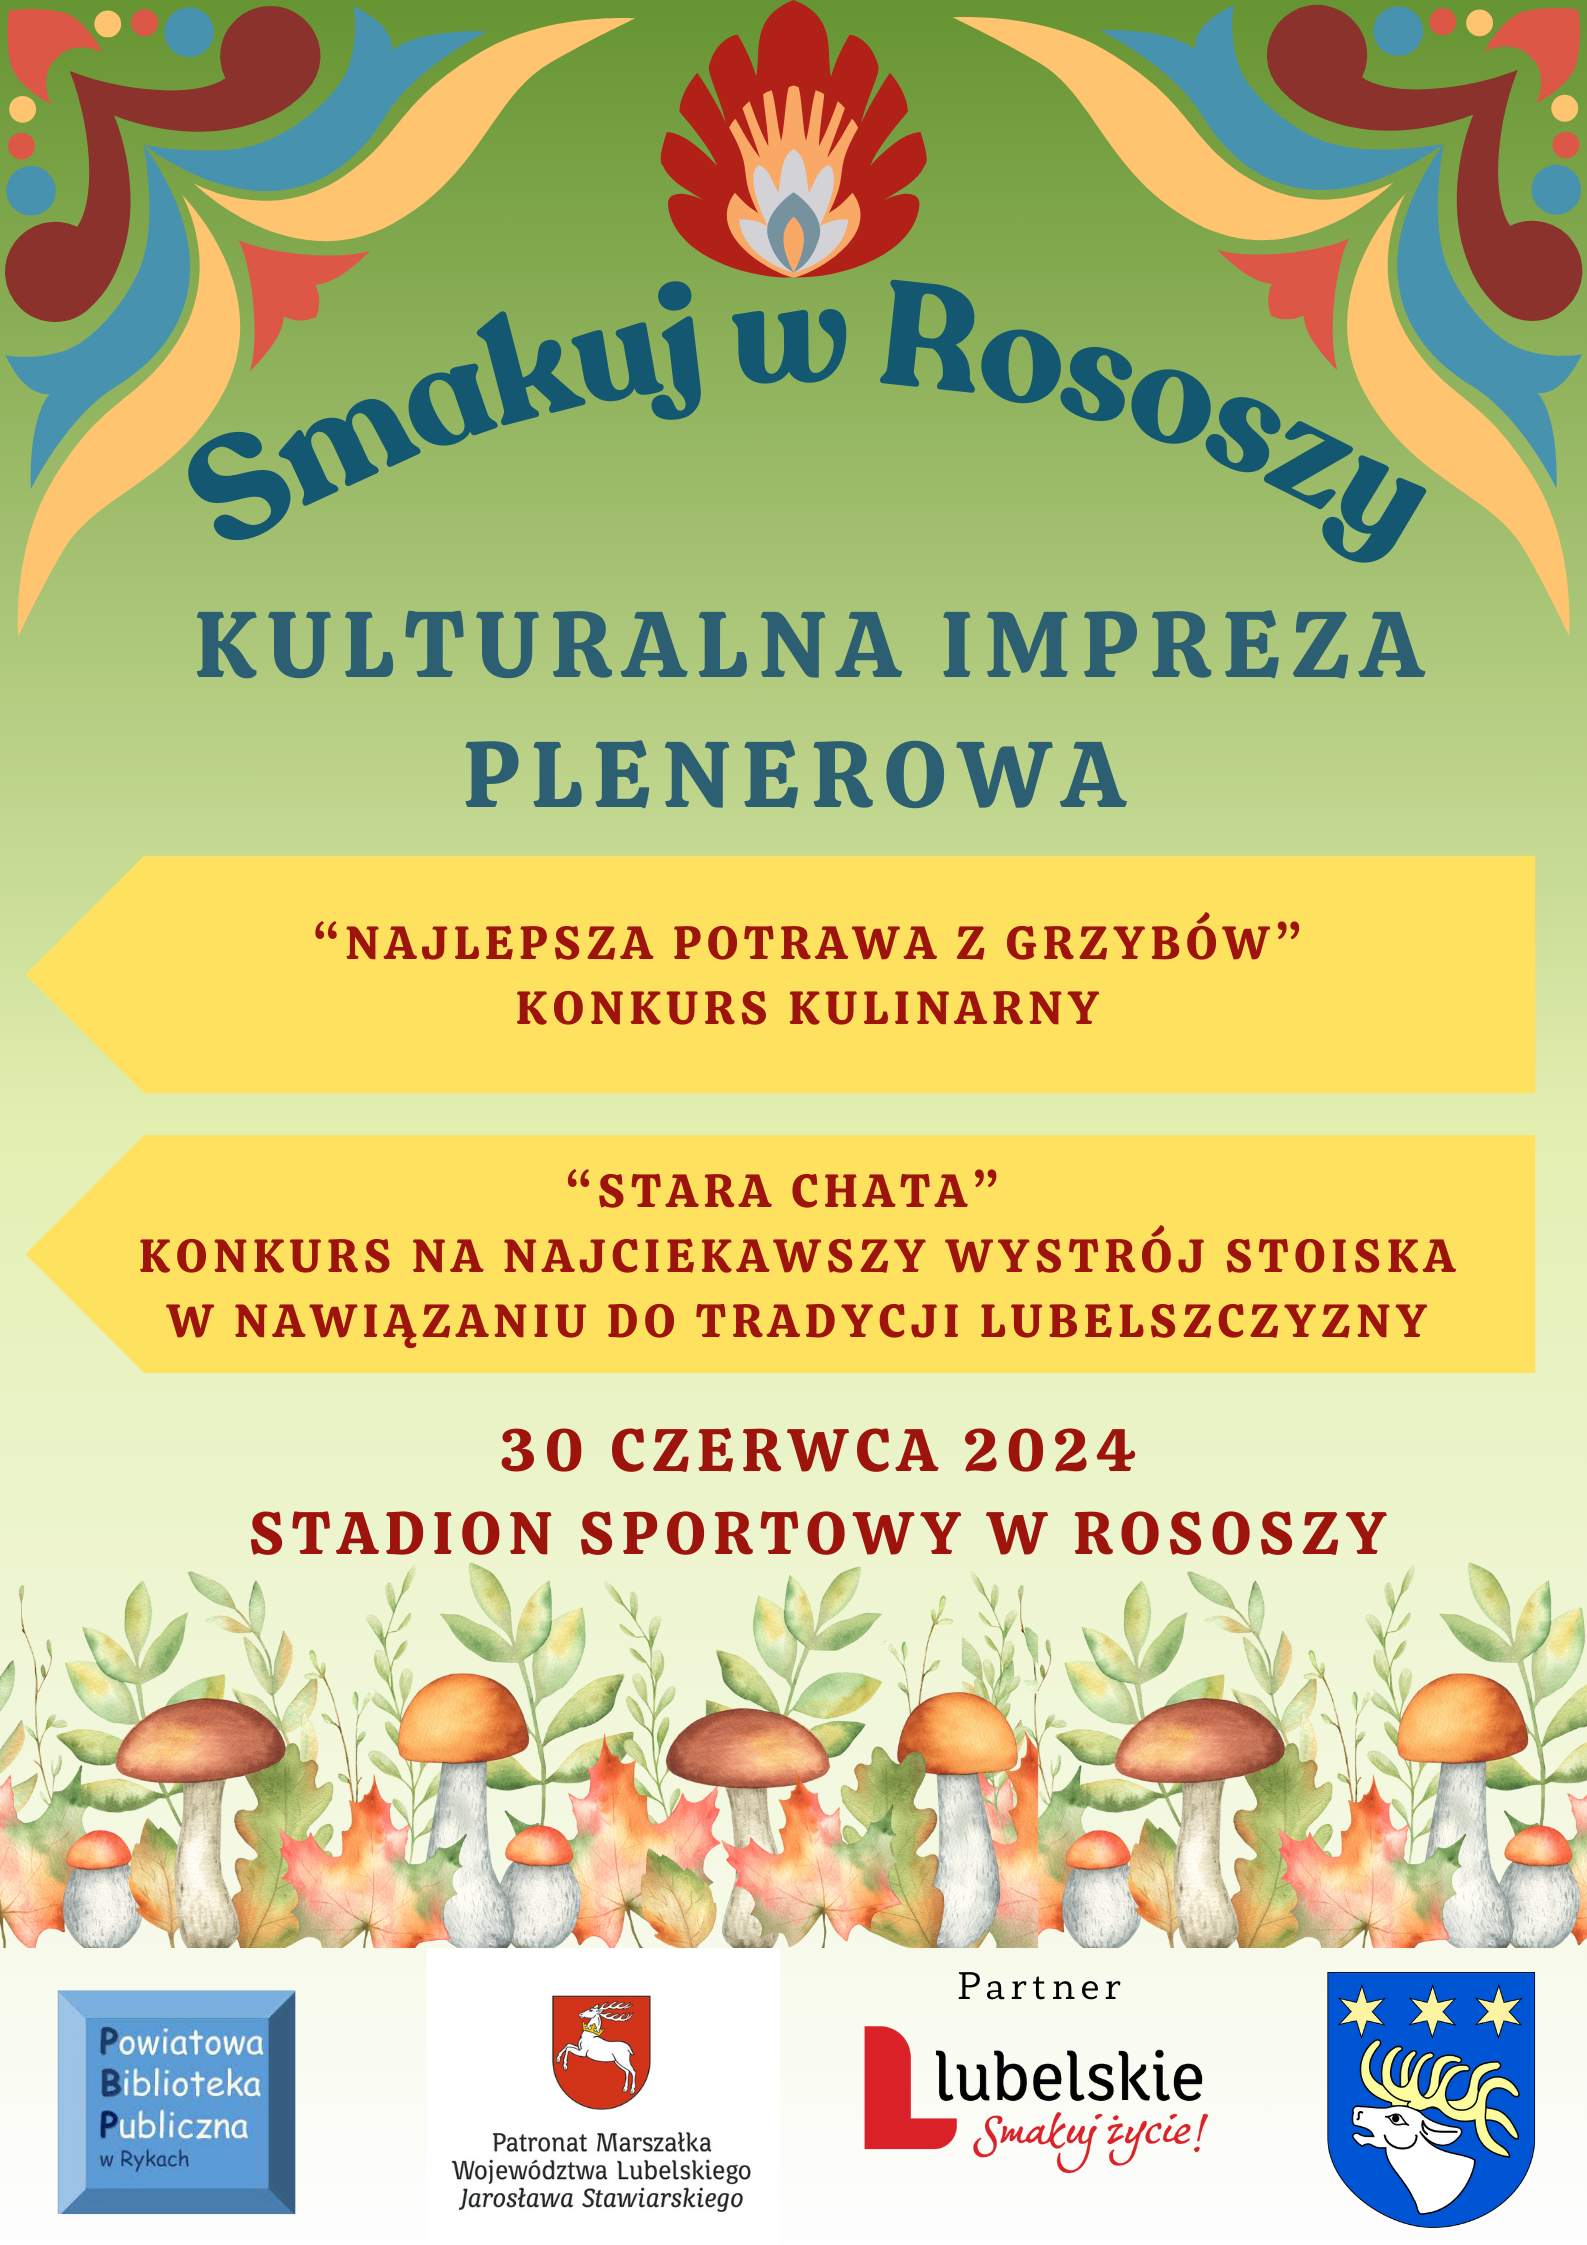 Plakat wydarzenia "Smakuj w Rososzy" z grafikami grzybów na dole i czerwonym tłem na górze, informacje o konkursach kulinarnych, wystawach i lokalnej tradycji.